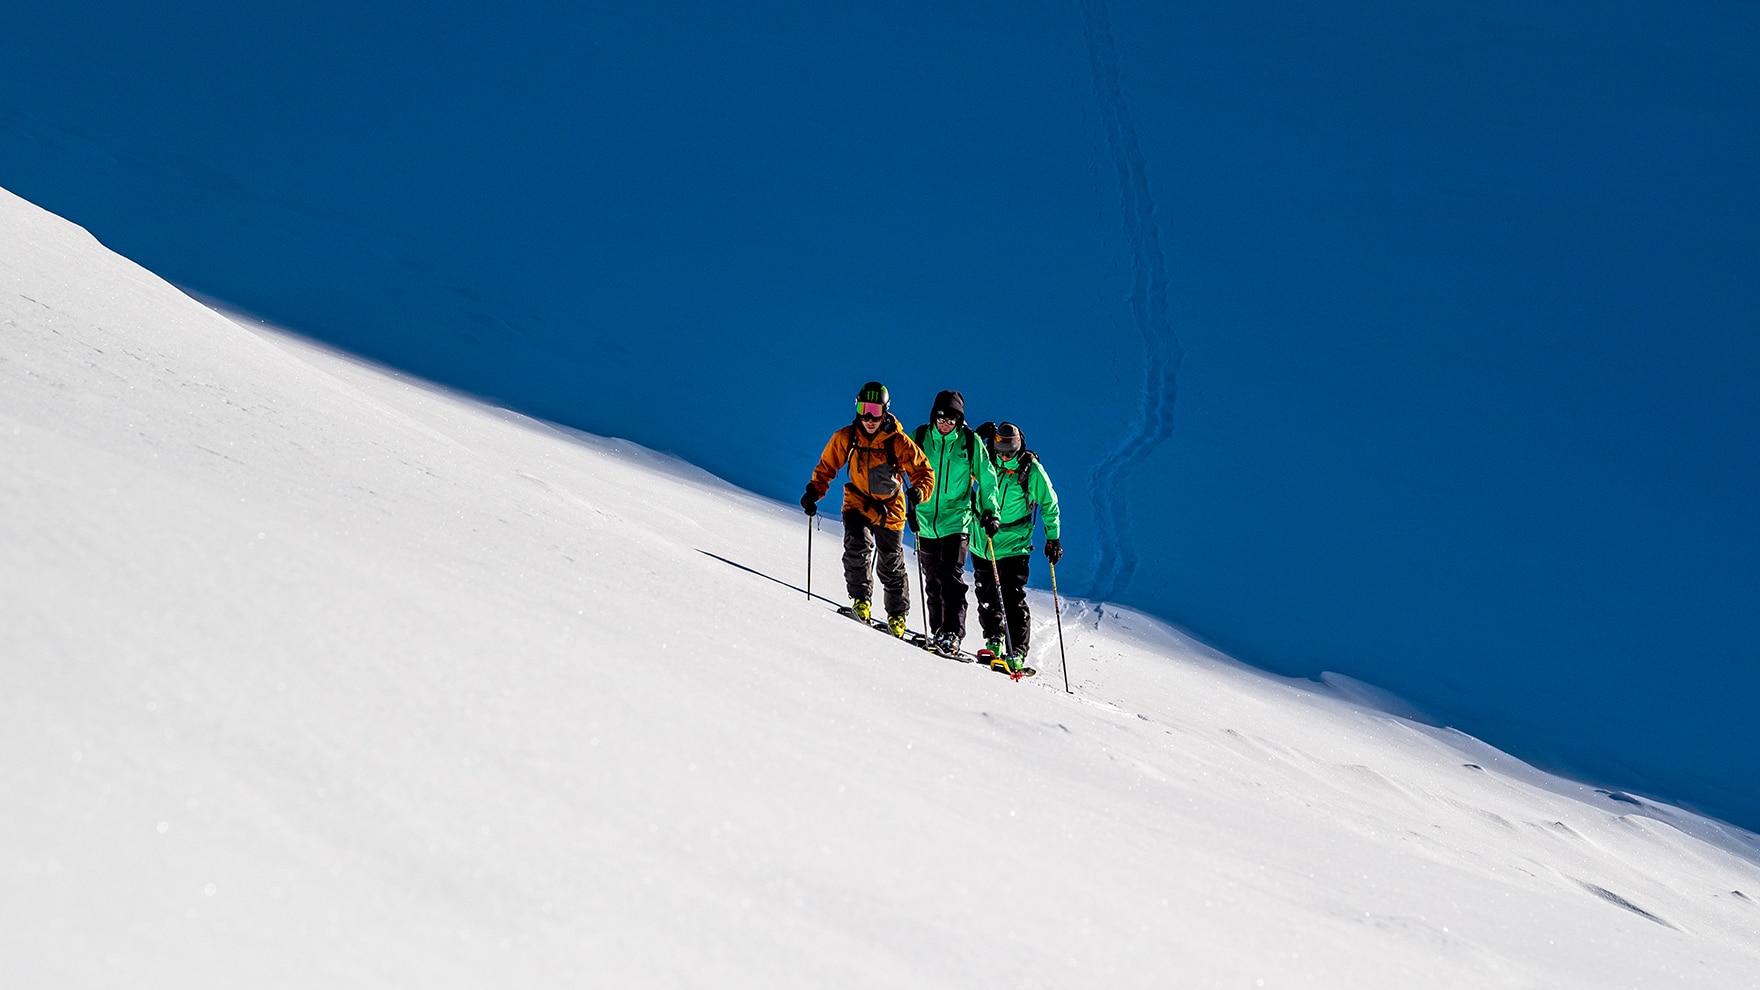 Eine Skitourenbindung muss nicht nur zum gewünschten Einsatzbereich, sondern auch zum Rest der Ausrüstung passen.